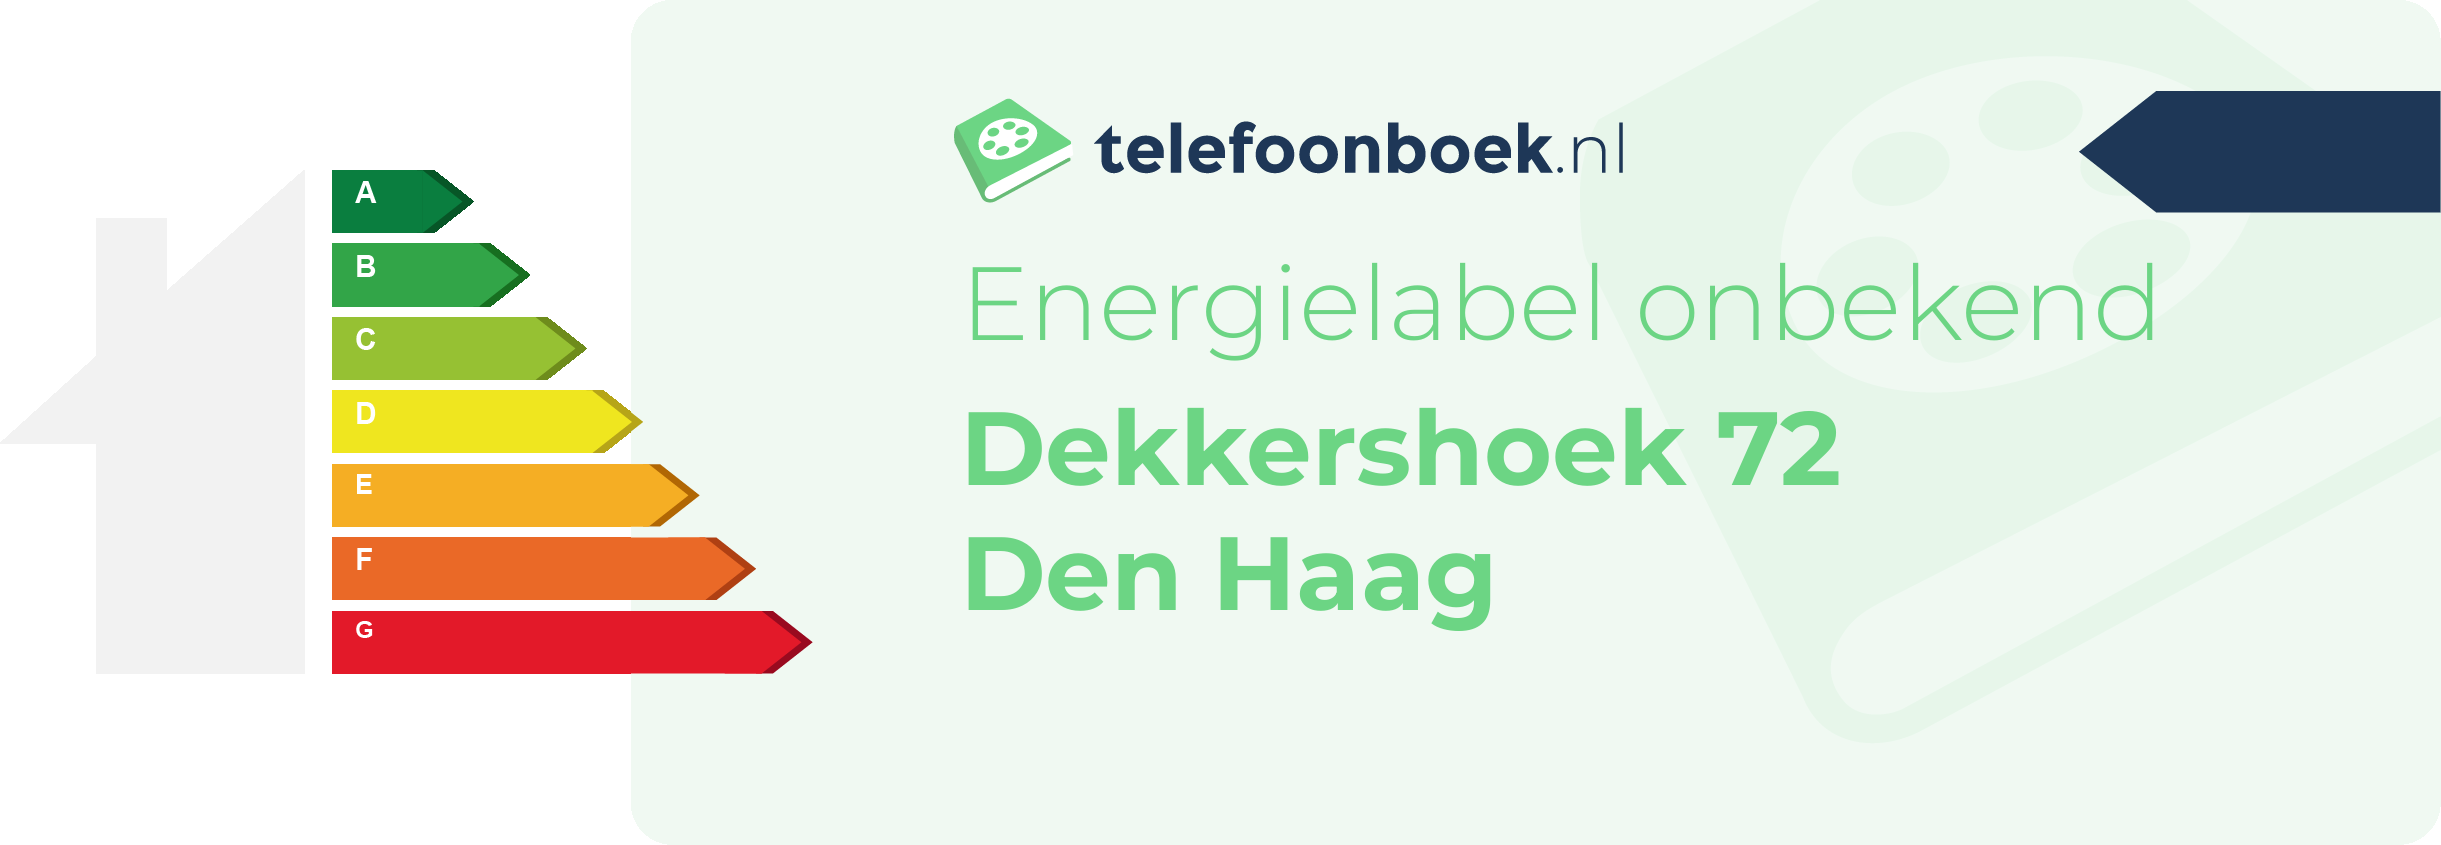 Energielabel Dekkershoek 72 Den Haag